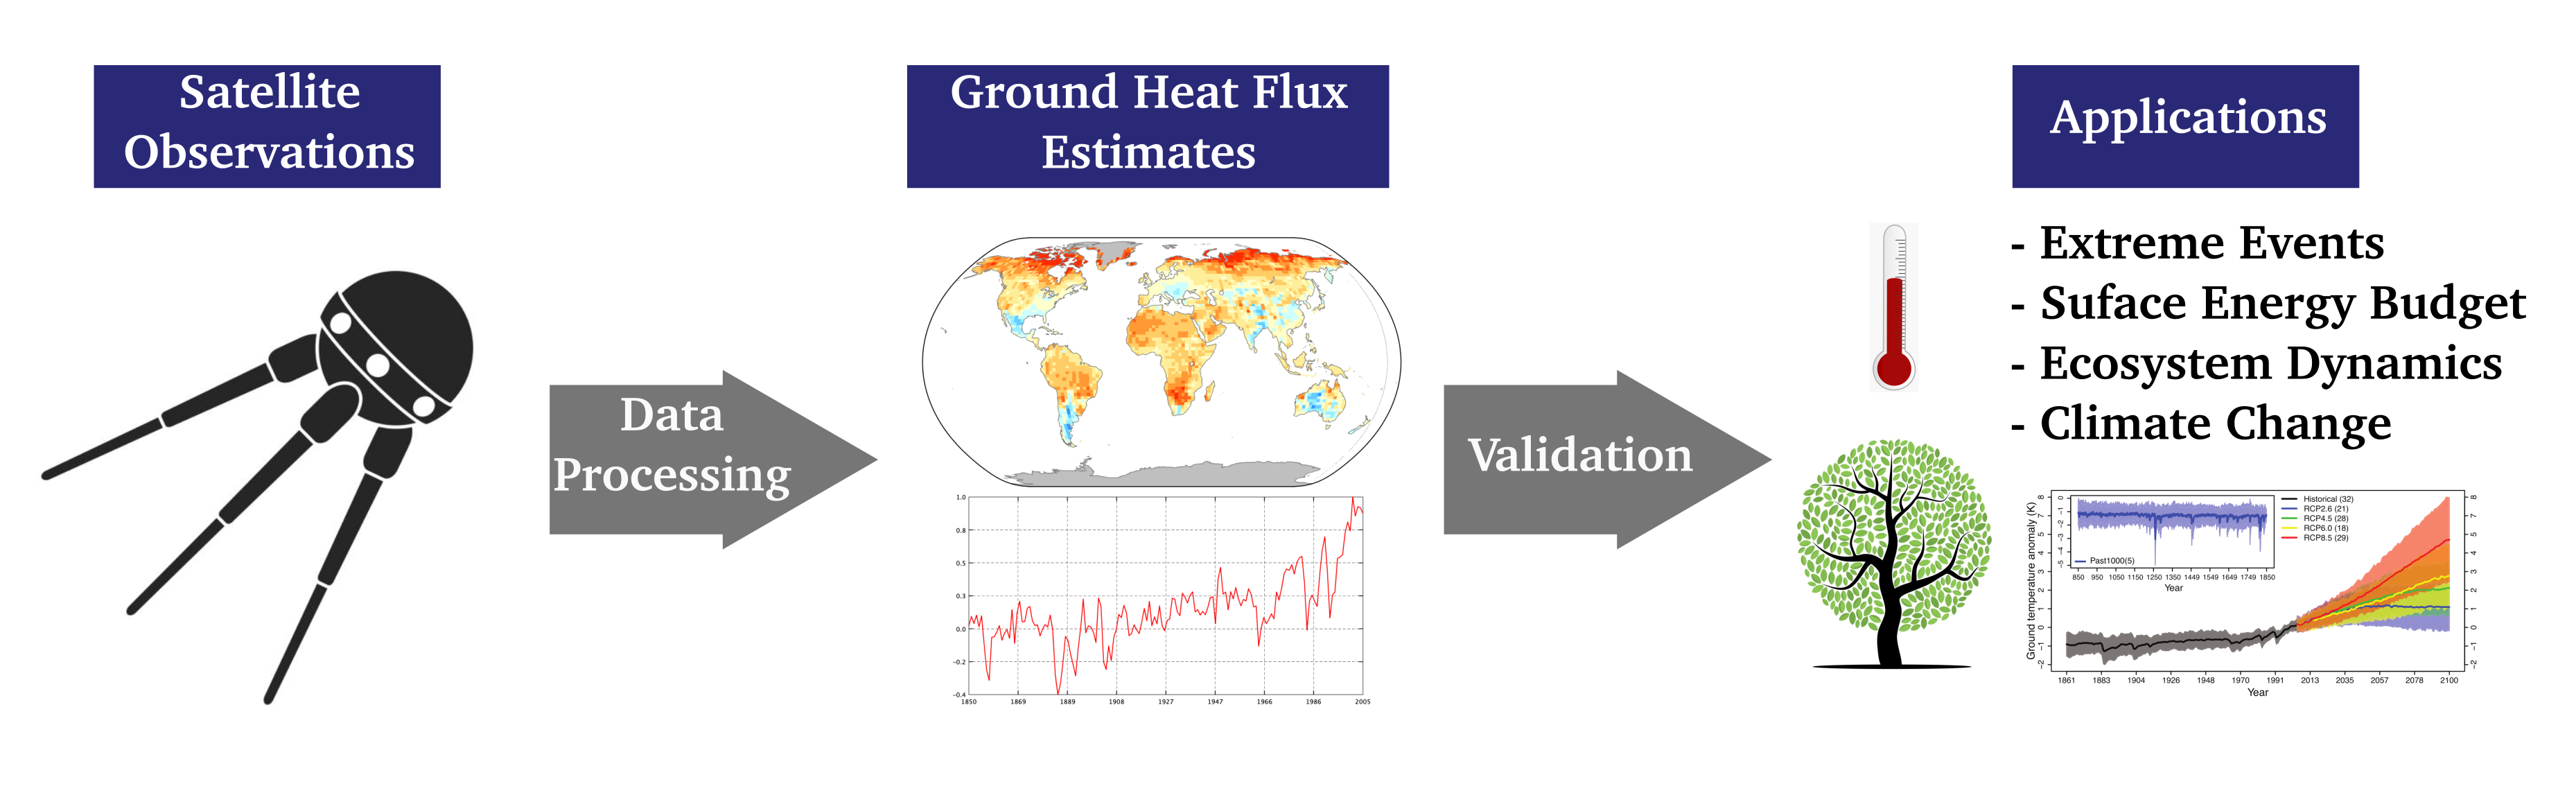 Ground Heat Flux